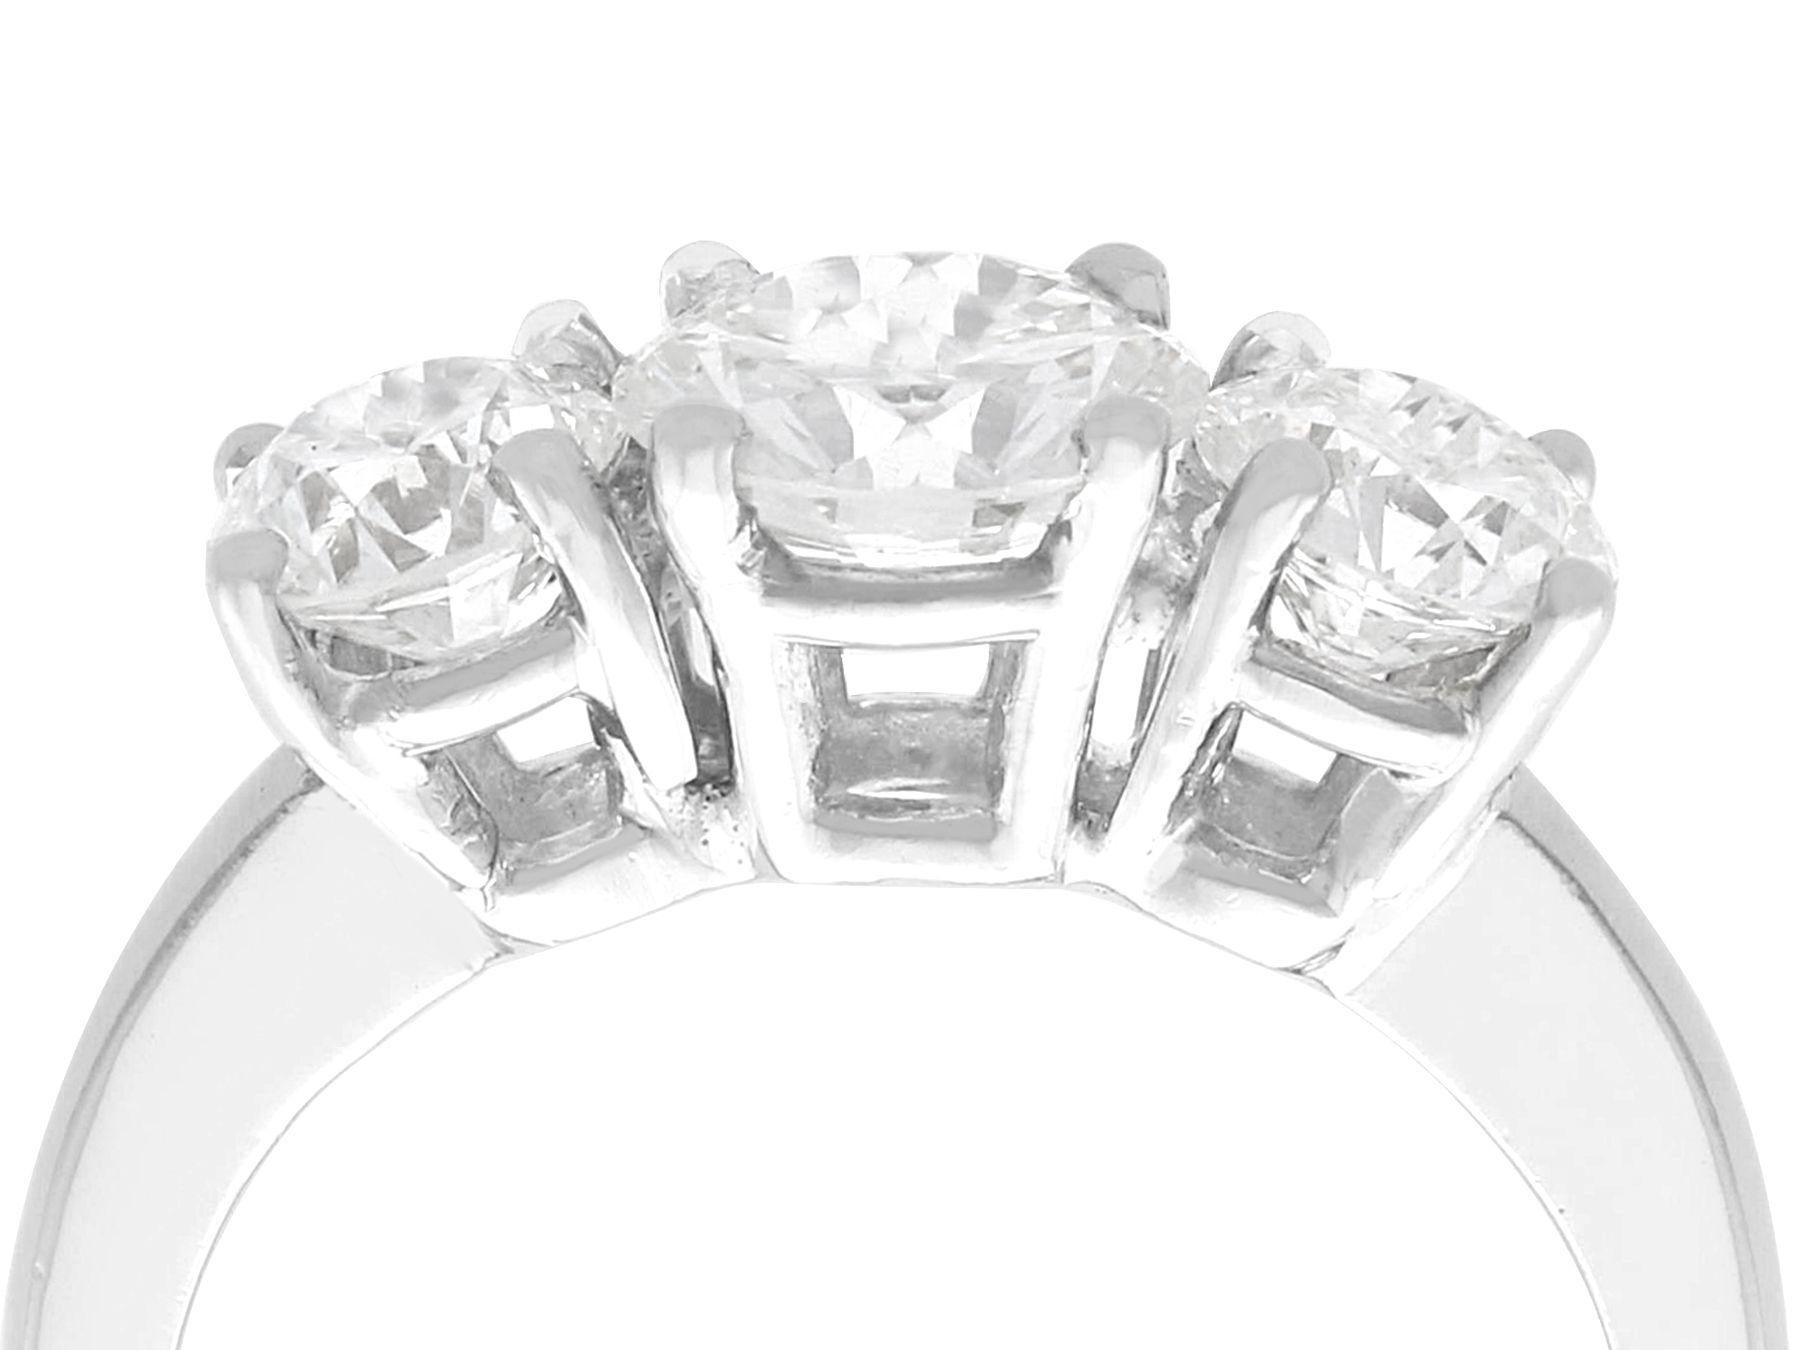 Ein feiner und beeindruckender 2,49 Karat Diamant- und Platinring mit drei Steinen; Teil unserer verschiedenen Verlobungsring-Kollektionen

Dieser atemberaubende, feine und beeindruckende Diamant-Trilogie-Ring wurde in Platin gefertigt.

Die